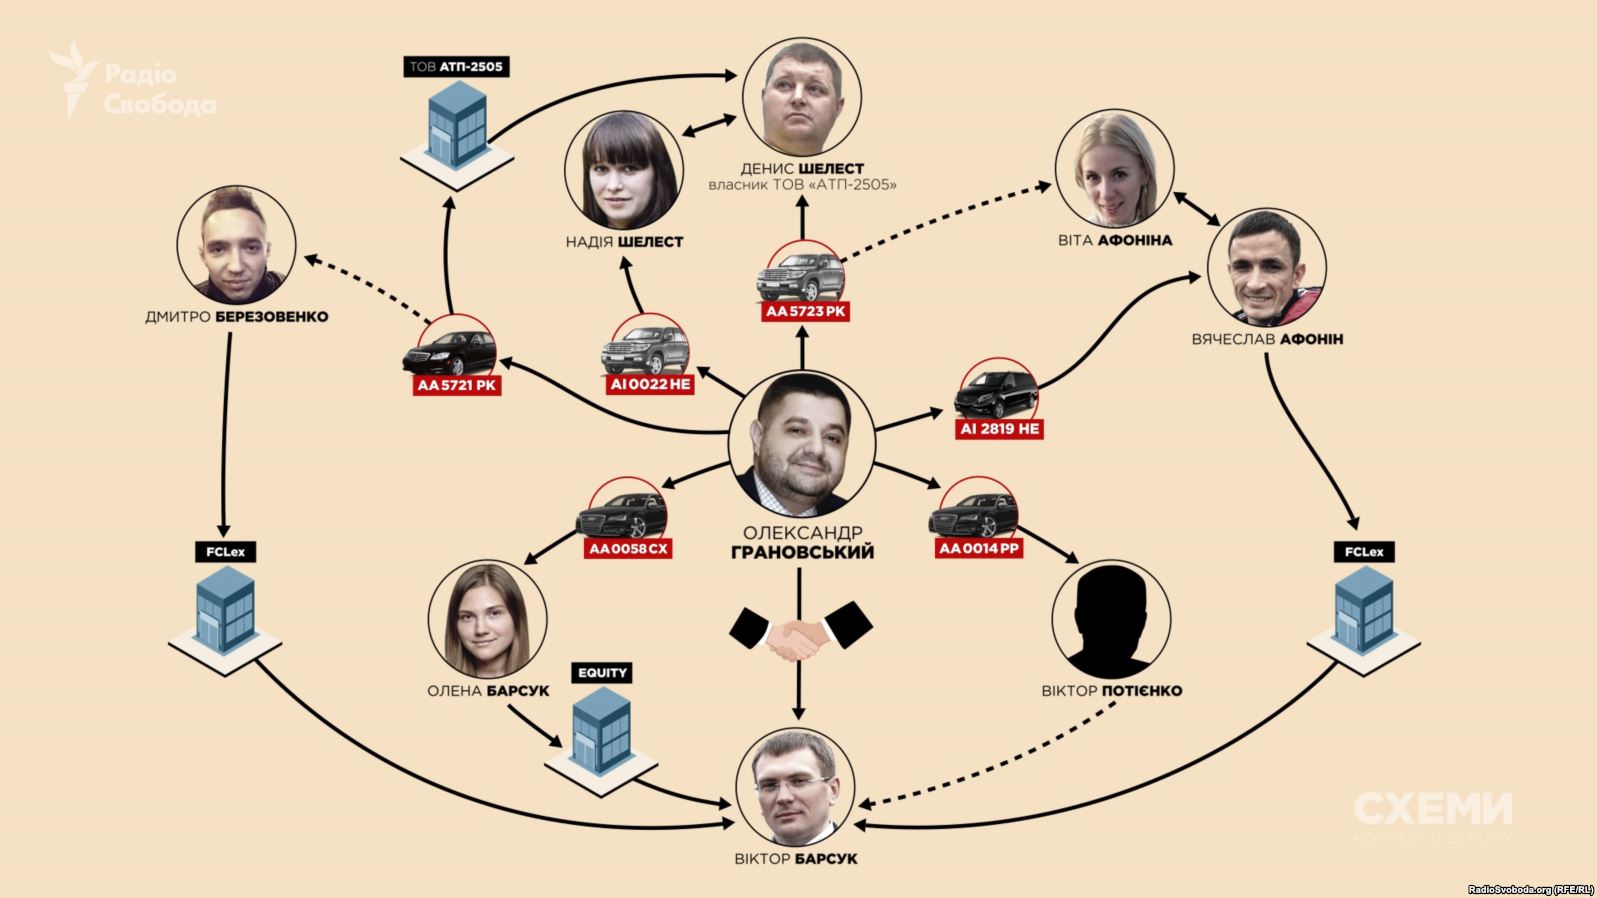 Грановский не декларирует элитные авто и коттедж под Киевом – СМИ